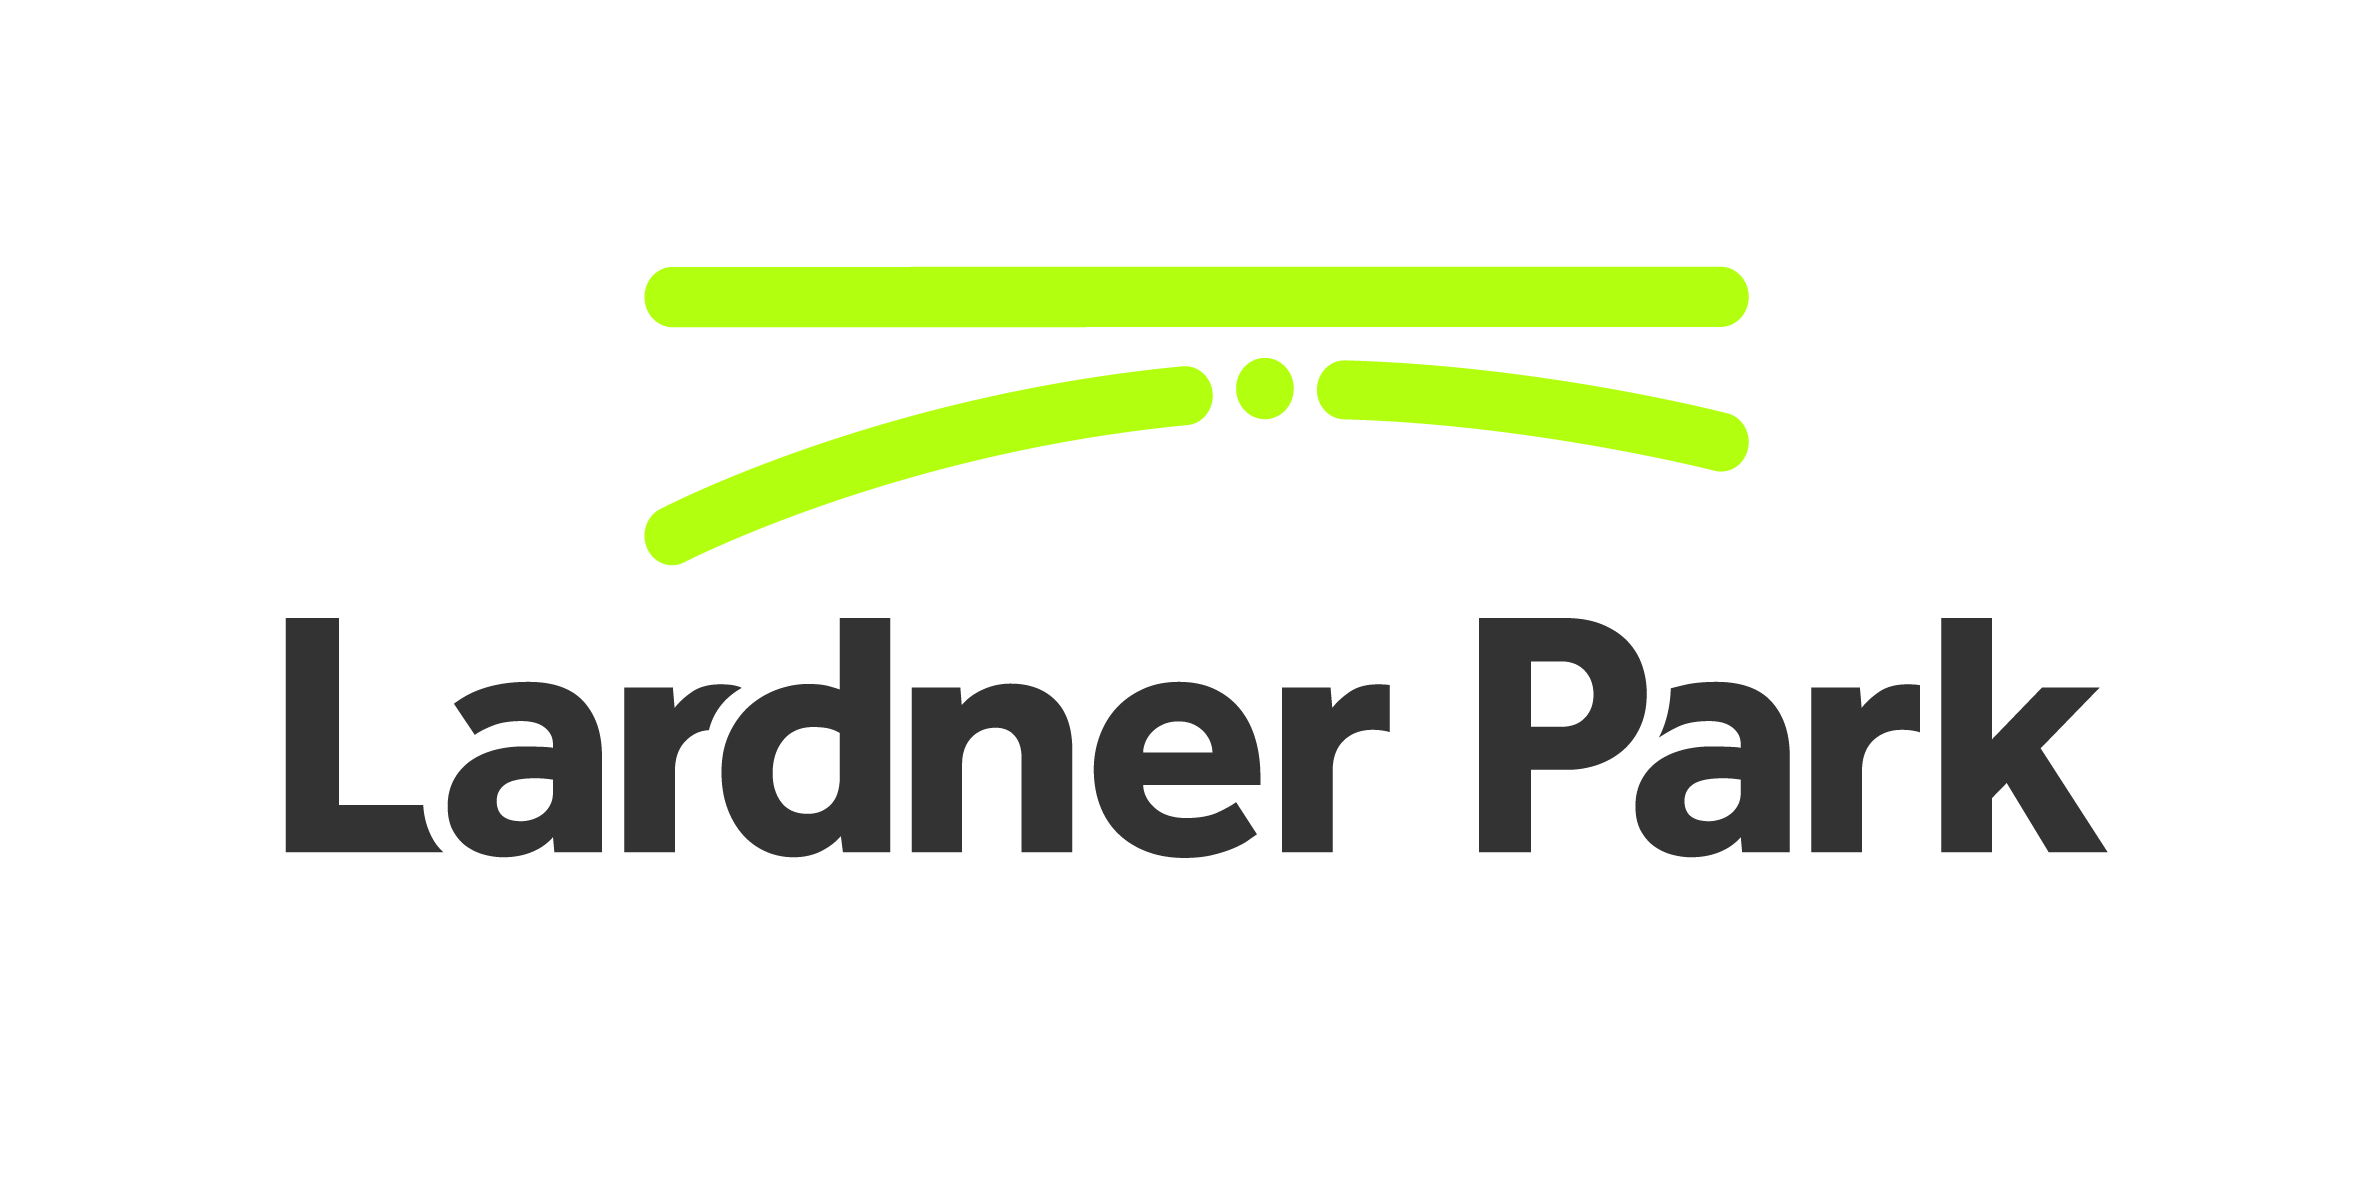 Lardner Park Equipment Hire